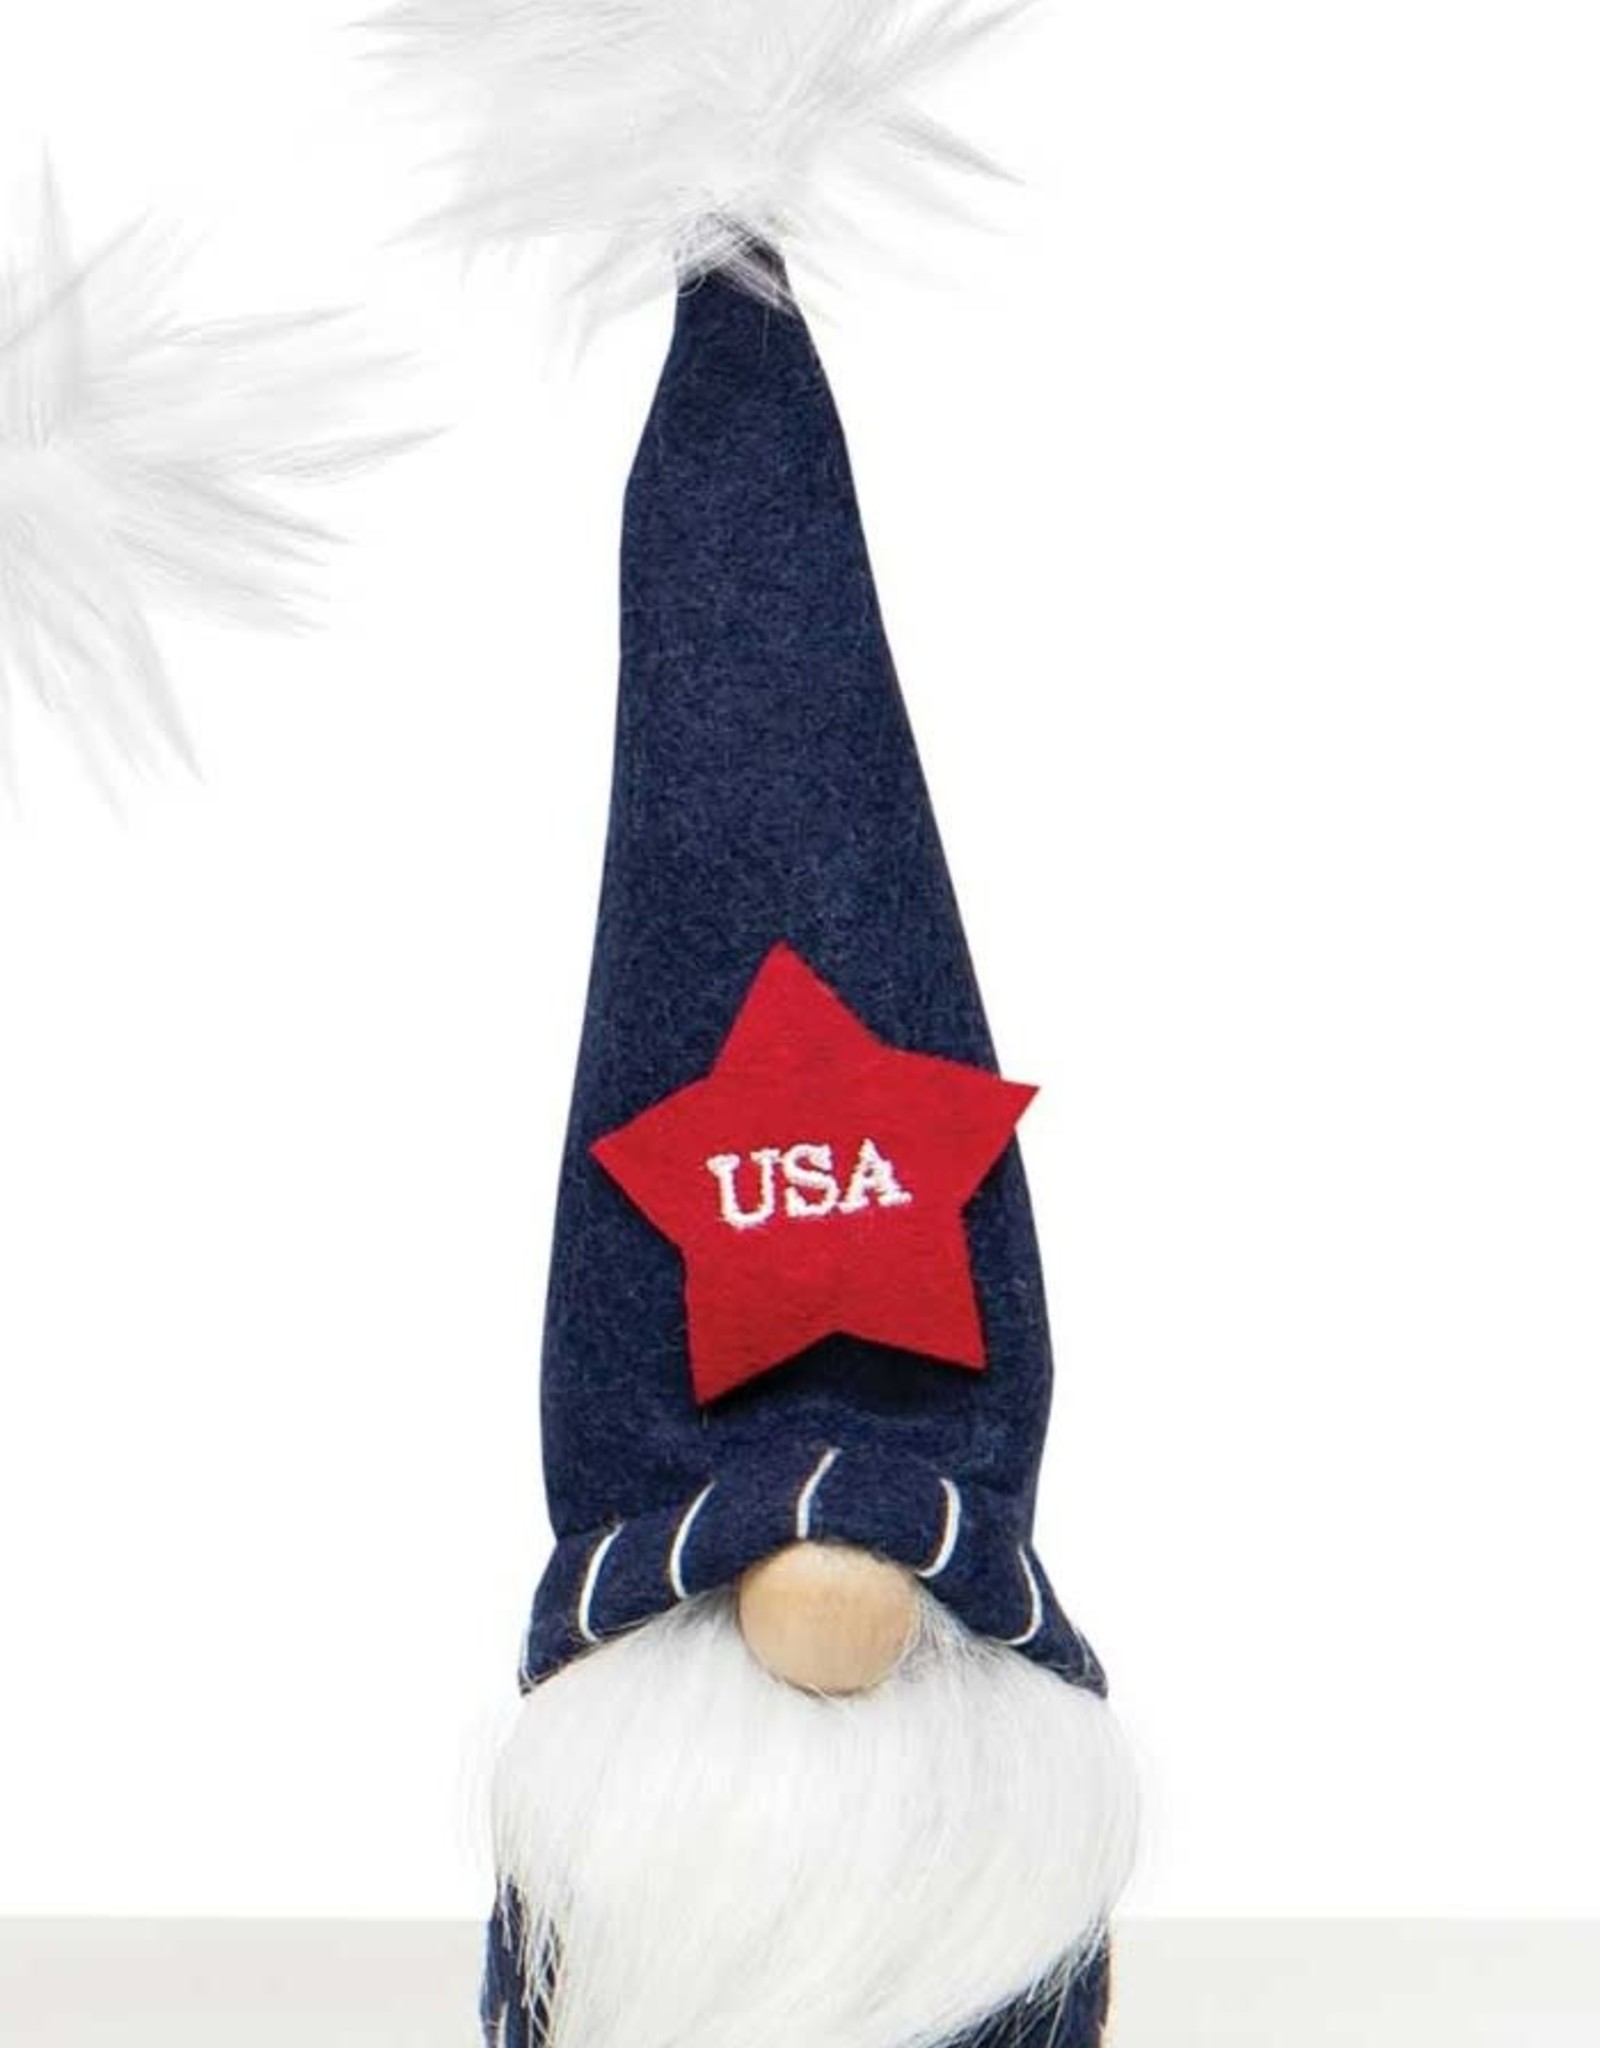 Meravic SALE 9" USA Pride Gnome - Blue Hat